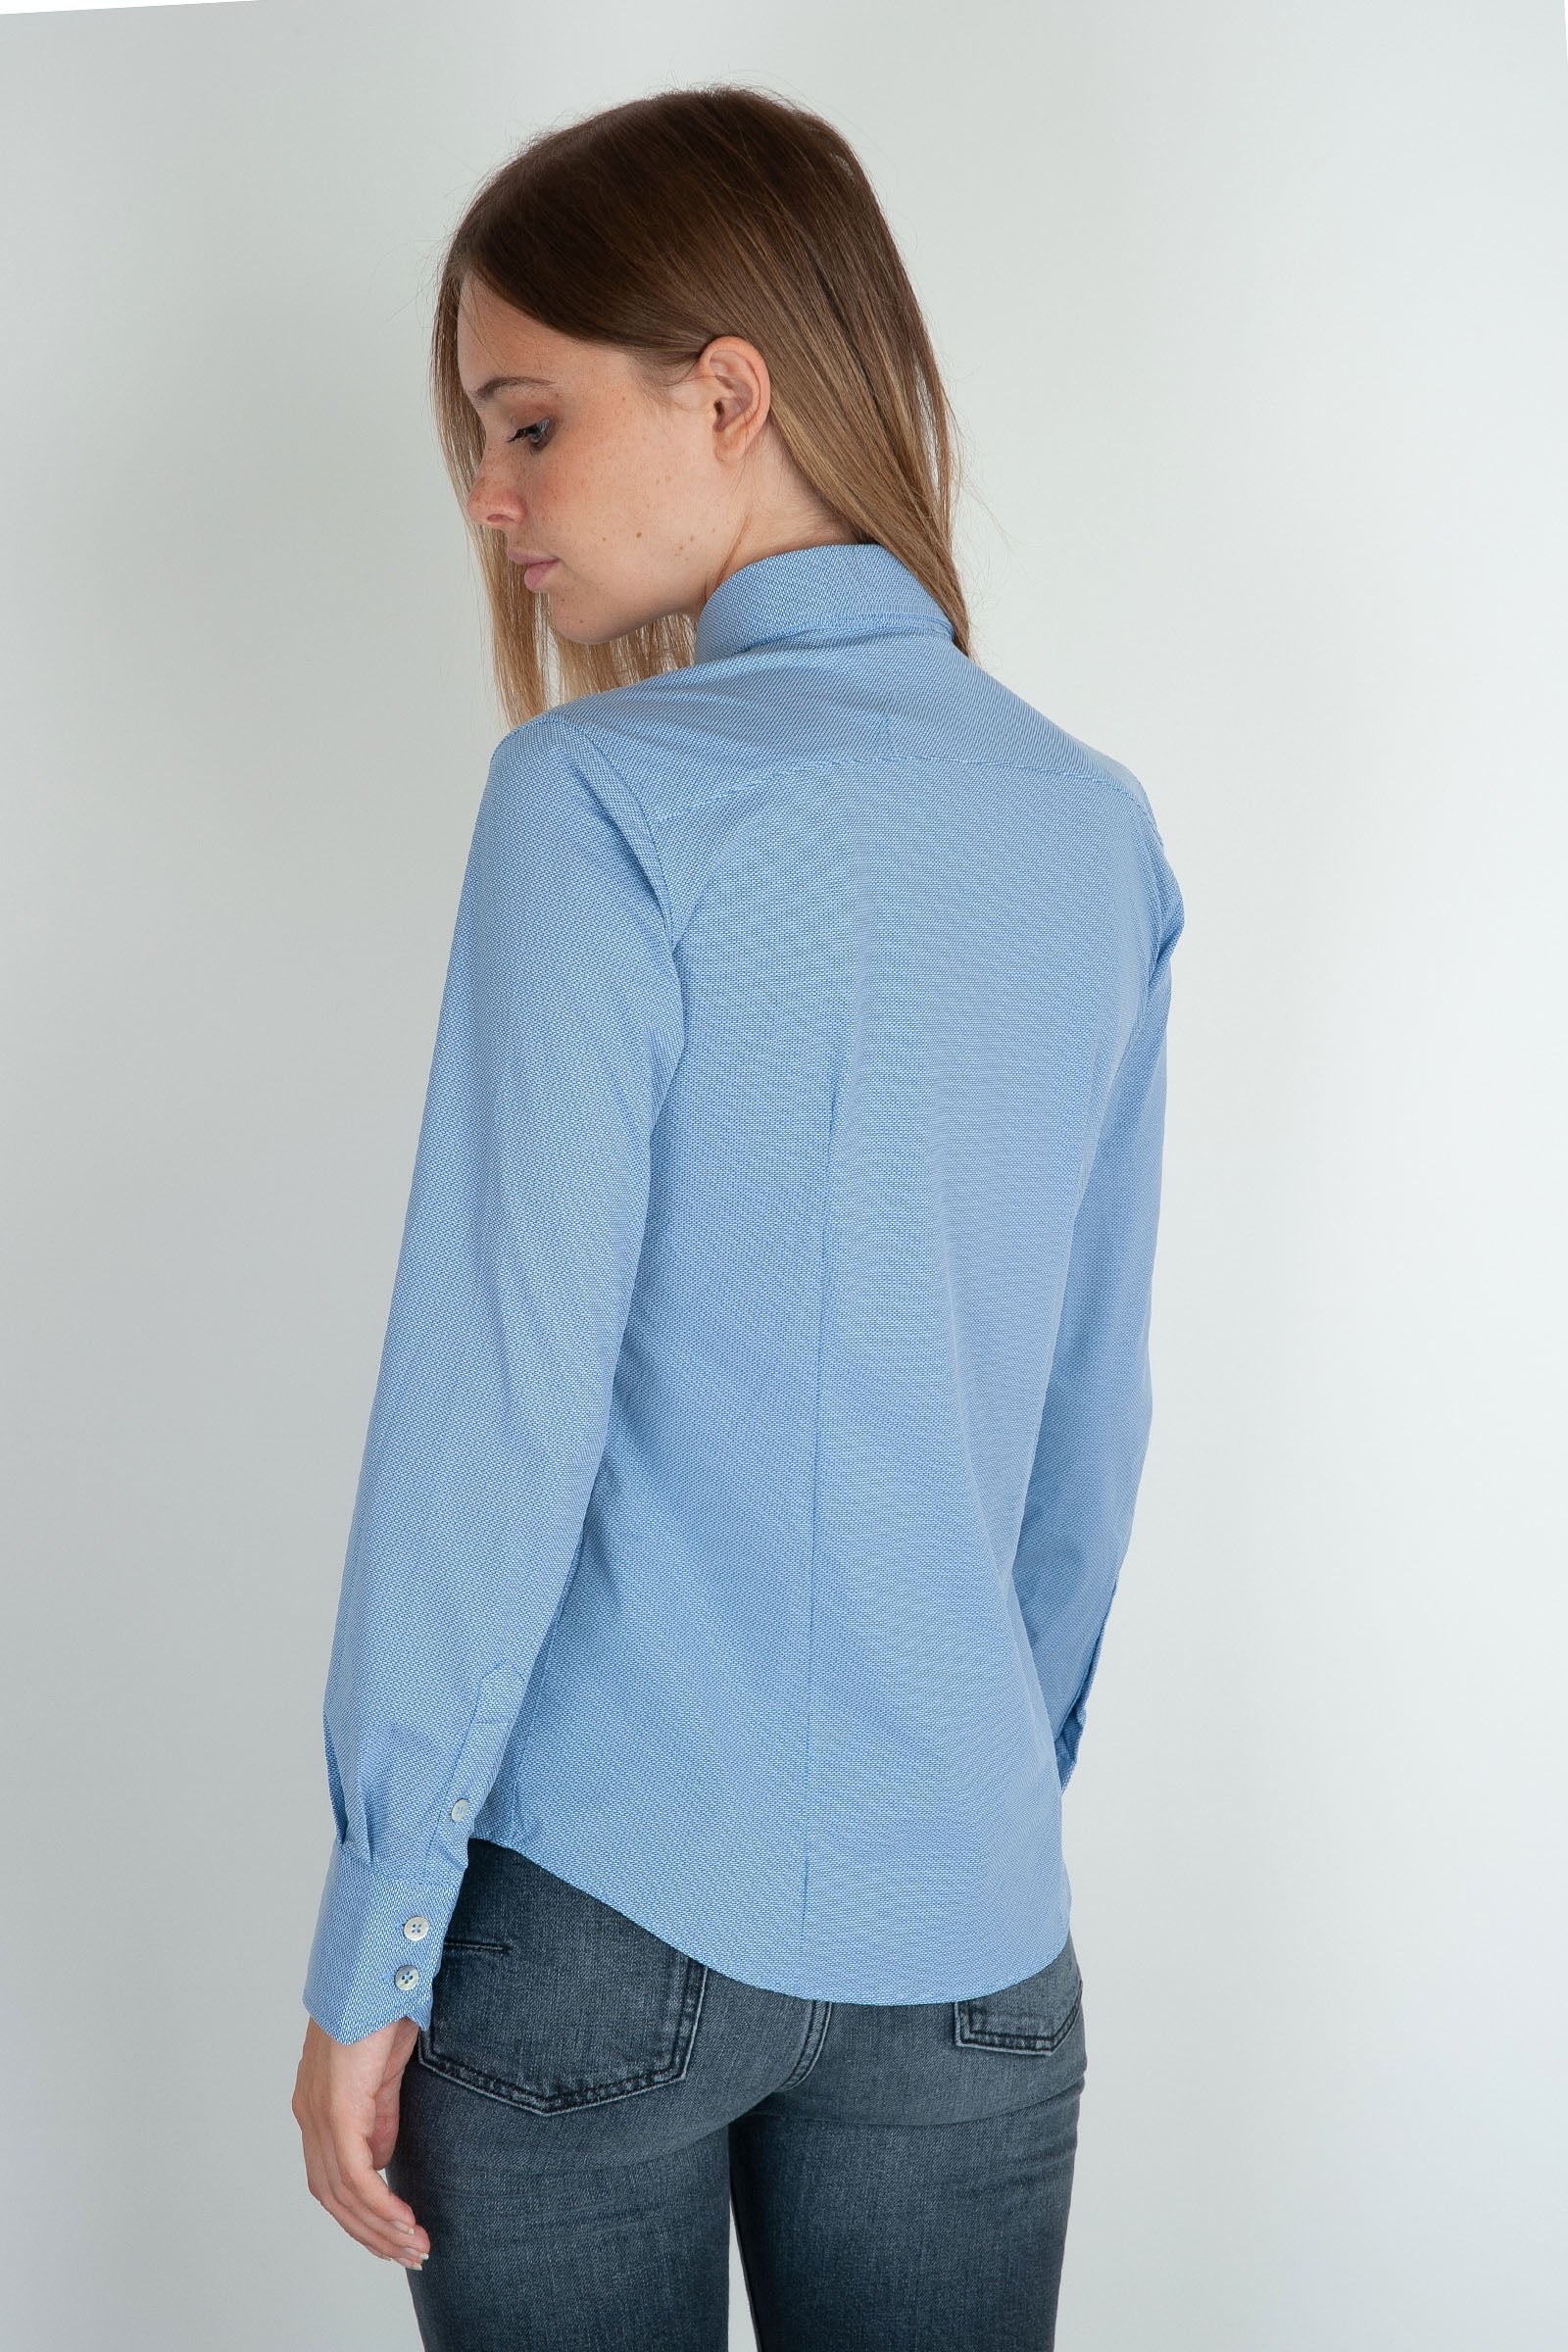 RRD Camicia Oxford Jacquard Blu in Materiale - 4